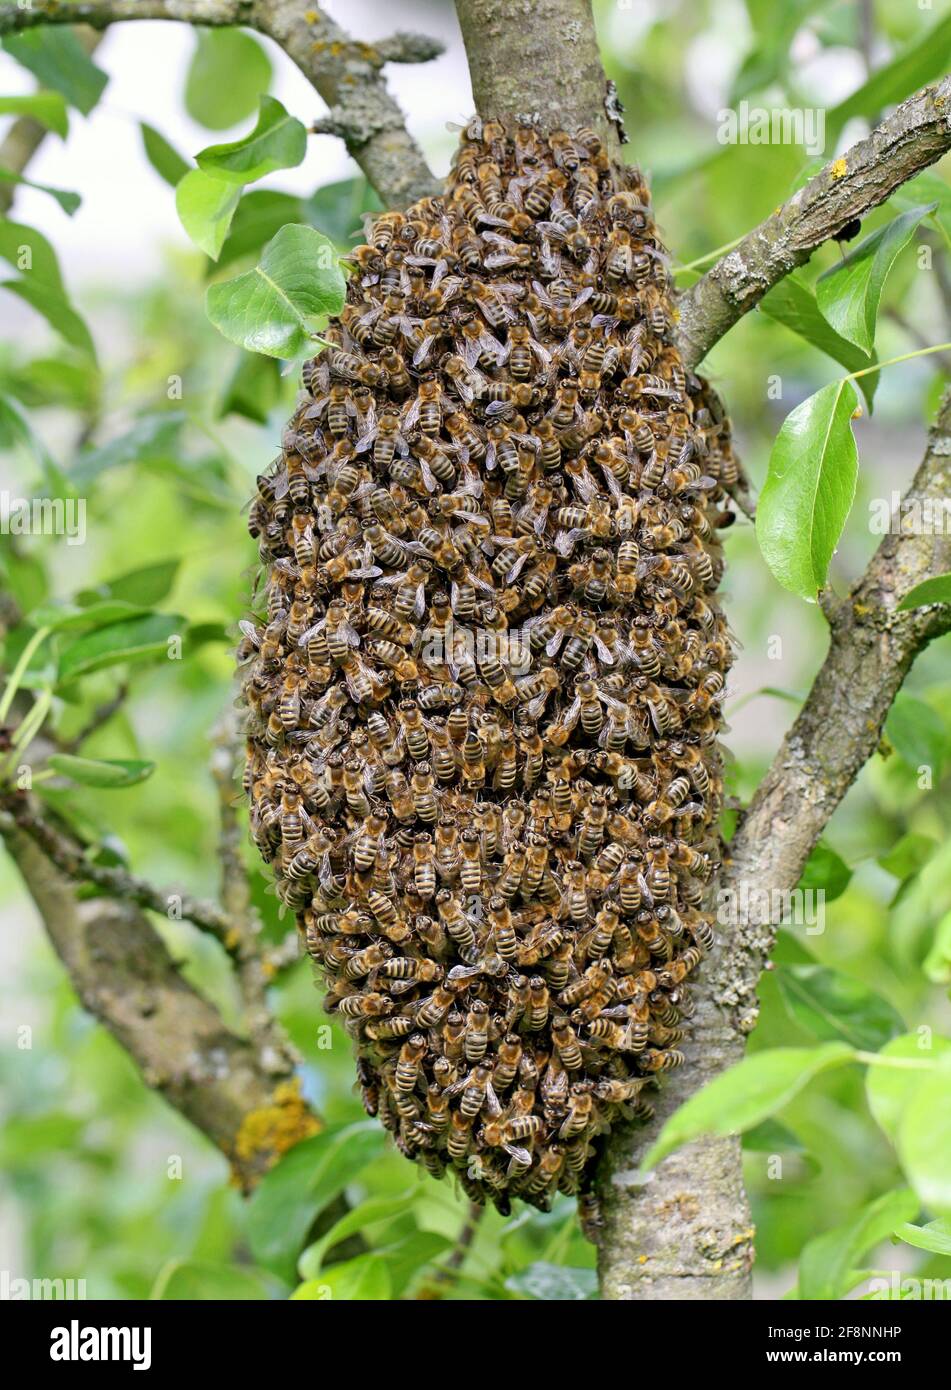 Un essaim d'abeilles européennes accrochées à un pommier tronc en forme de raisin Banque D'Images